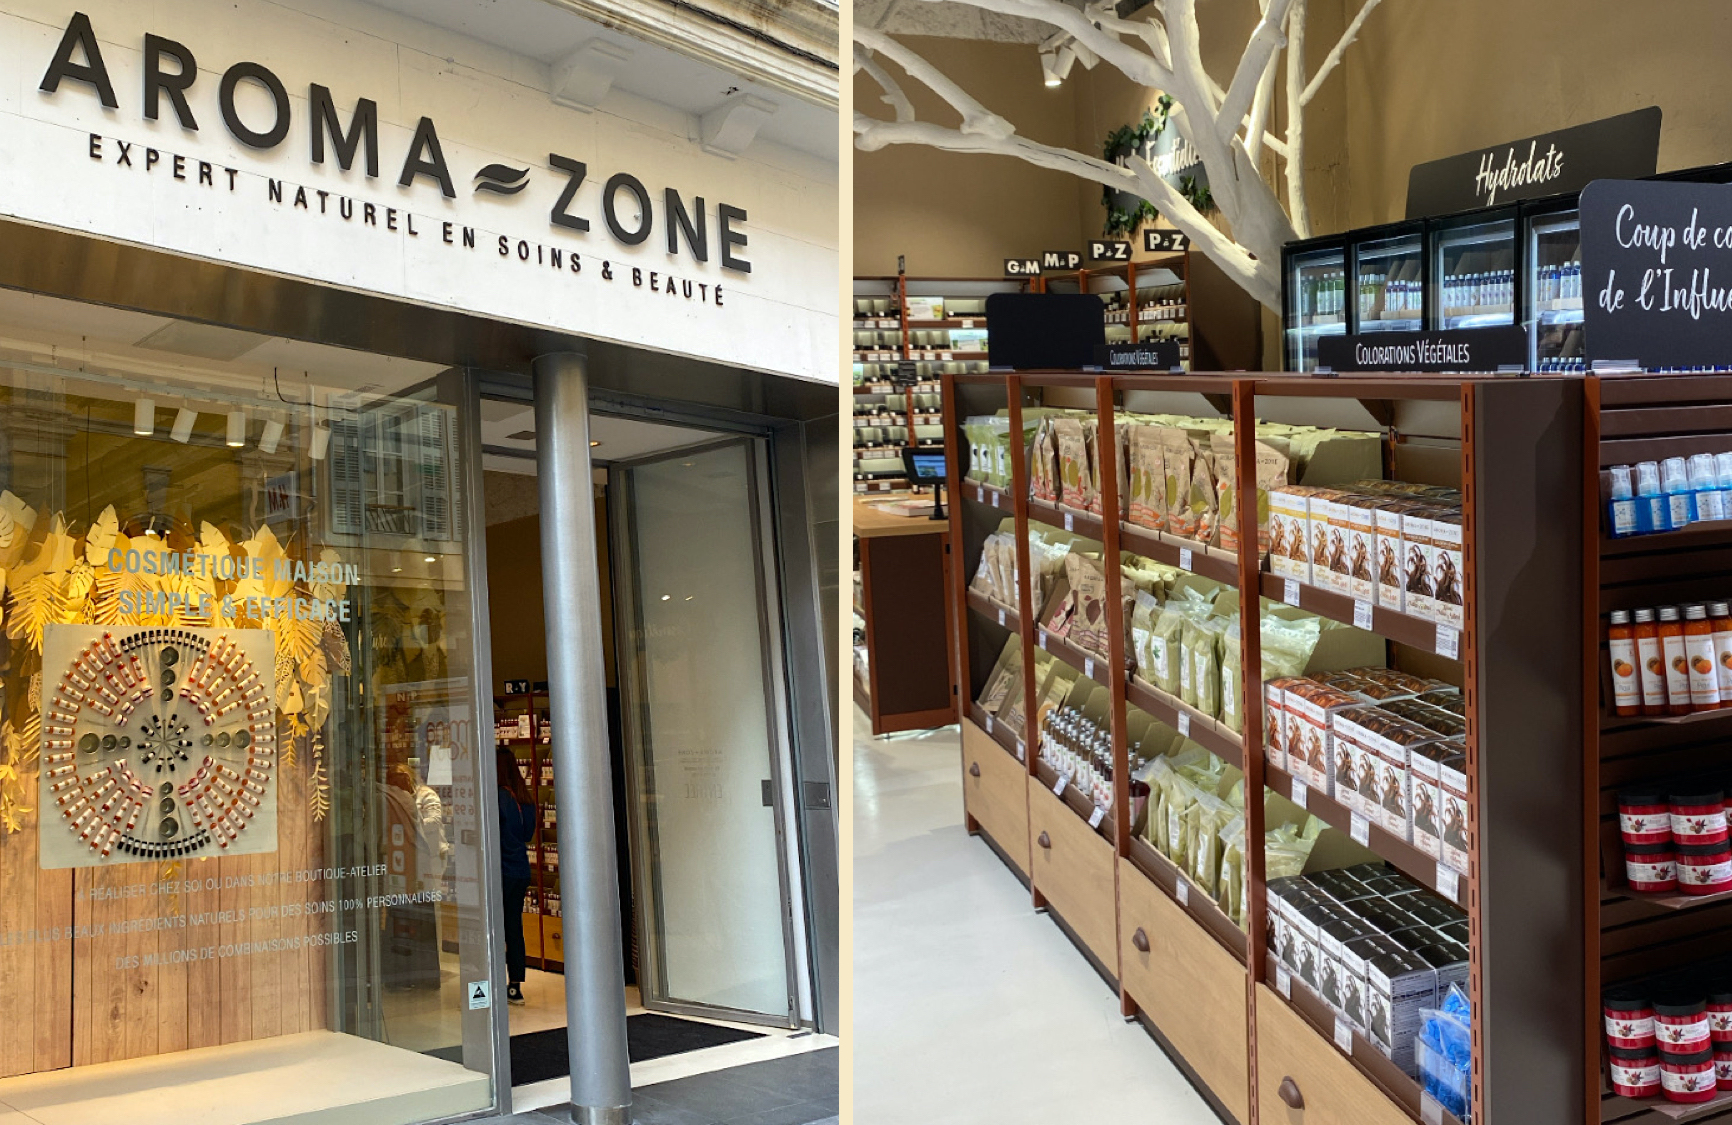 Aroma-Zone ouvre une boutique permanente à Strasbourg